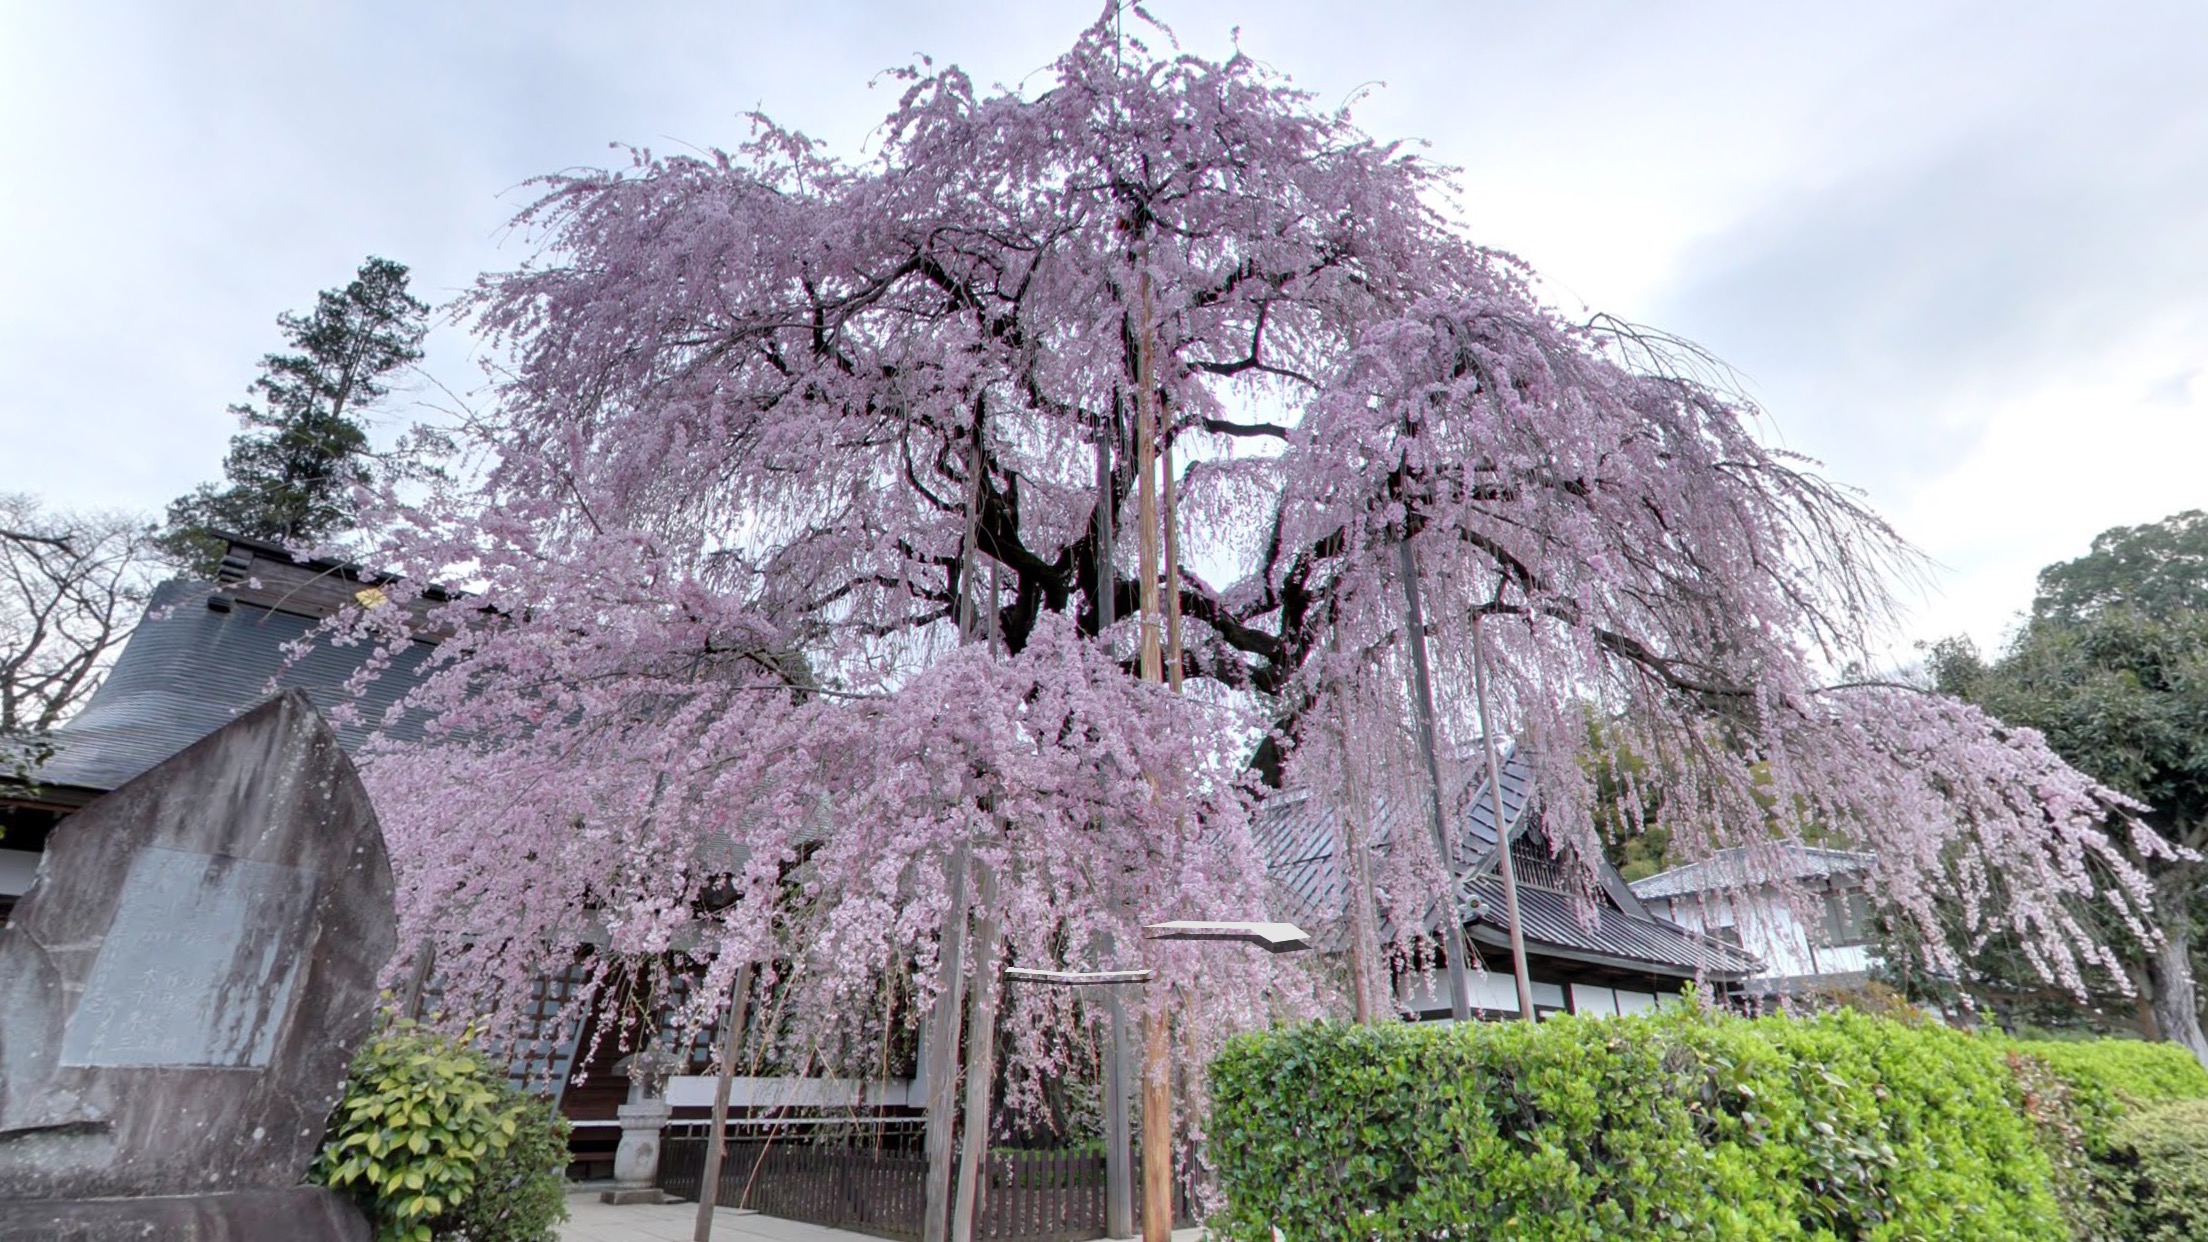 花見に役立つ、Googleマップアプリで桜の開花情報やおすすめスポットを提供中